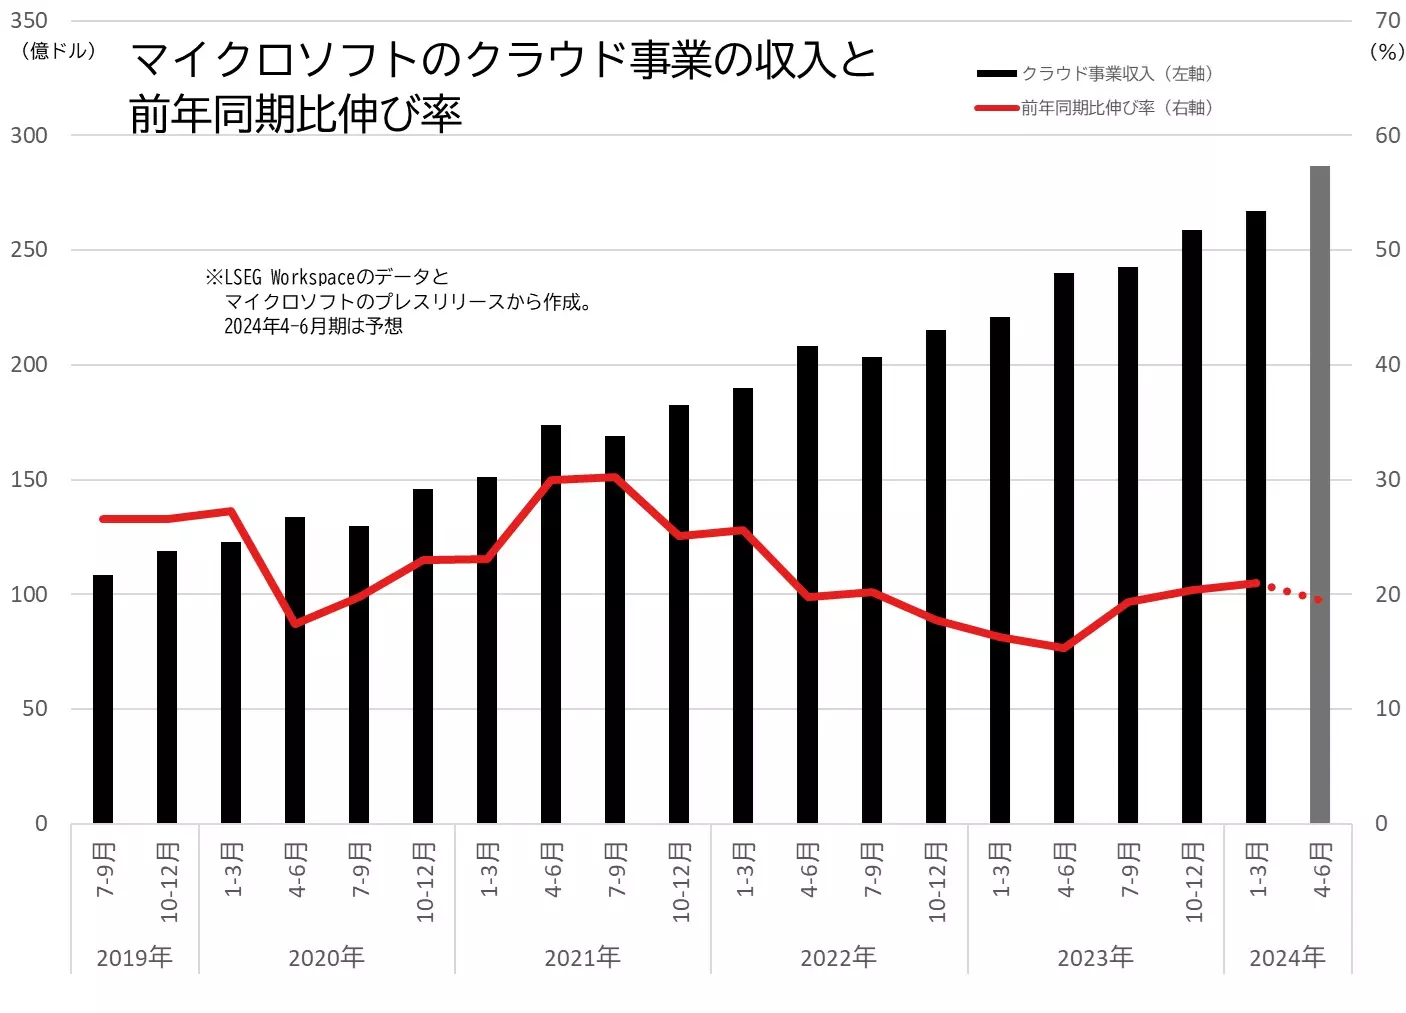 マイクロソフトのクラウド事業の収入と前年同月比伸び率の推移のグラフ